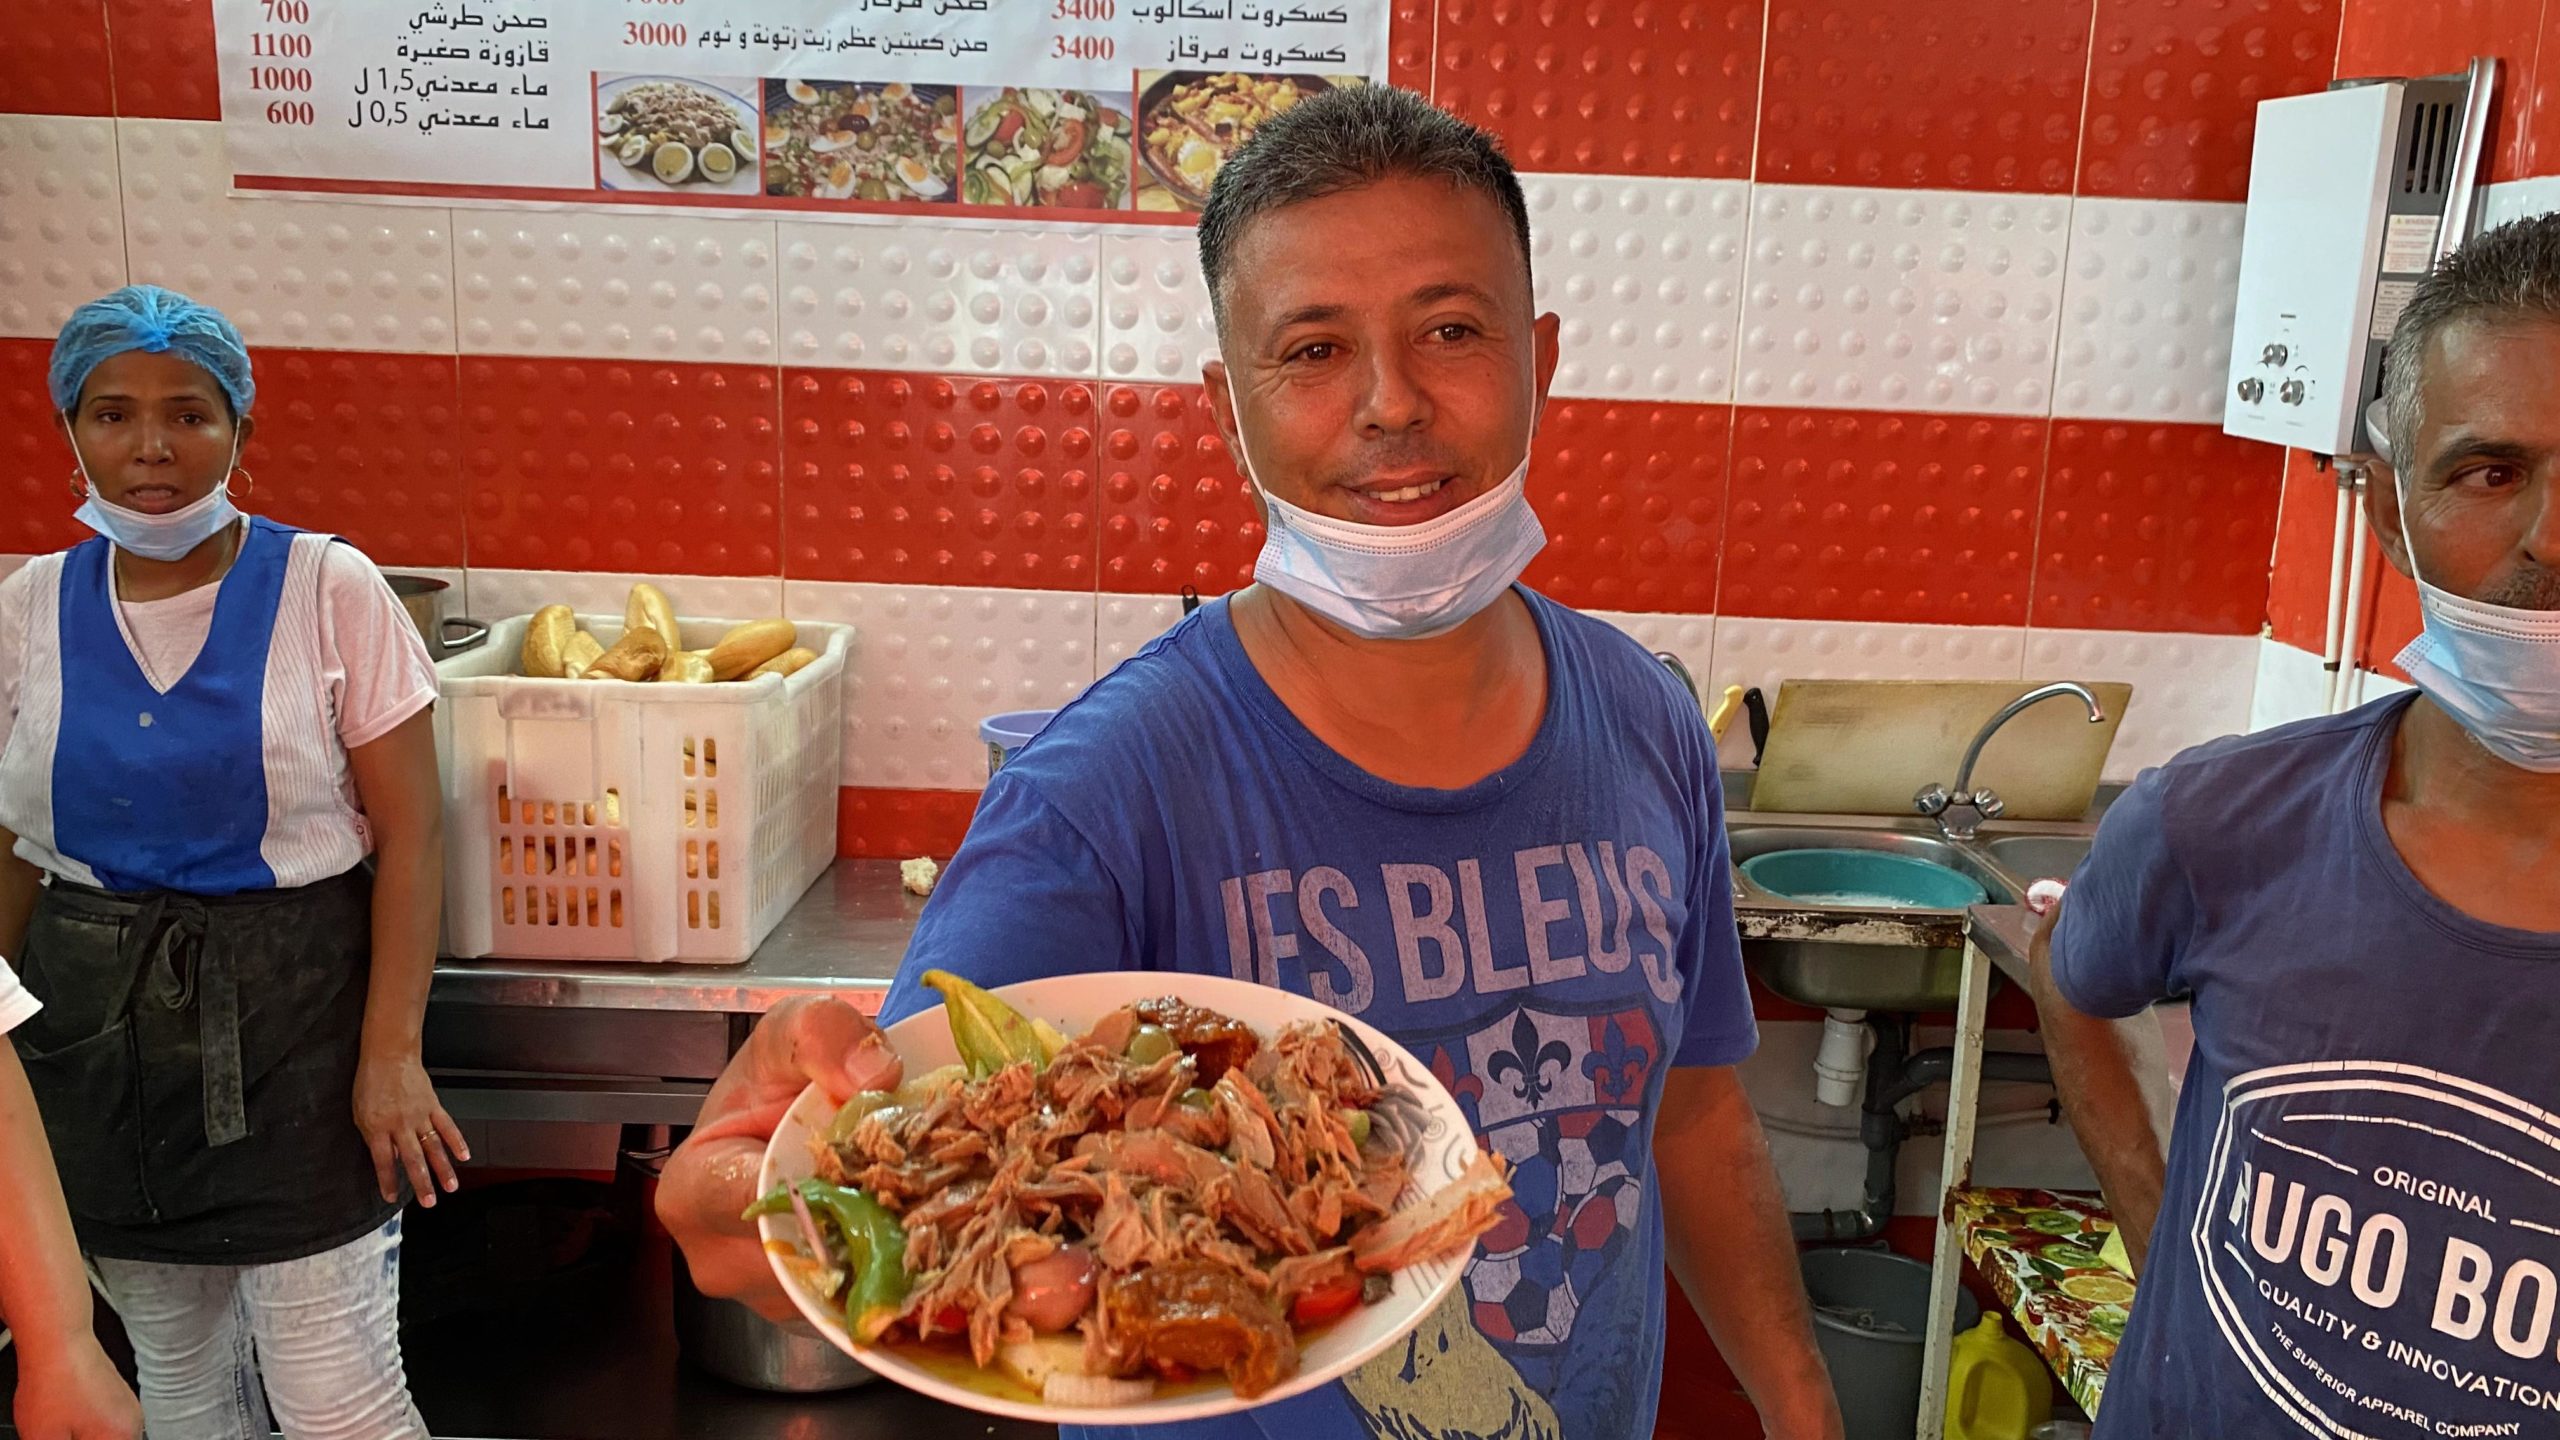 يُعدّ طبق الصحن التونسي، أحد أبرز أكلات الشوارع وأشهرها في تونس